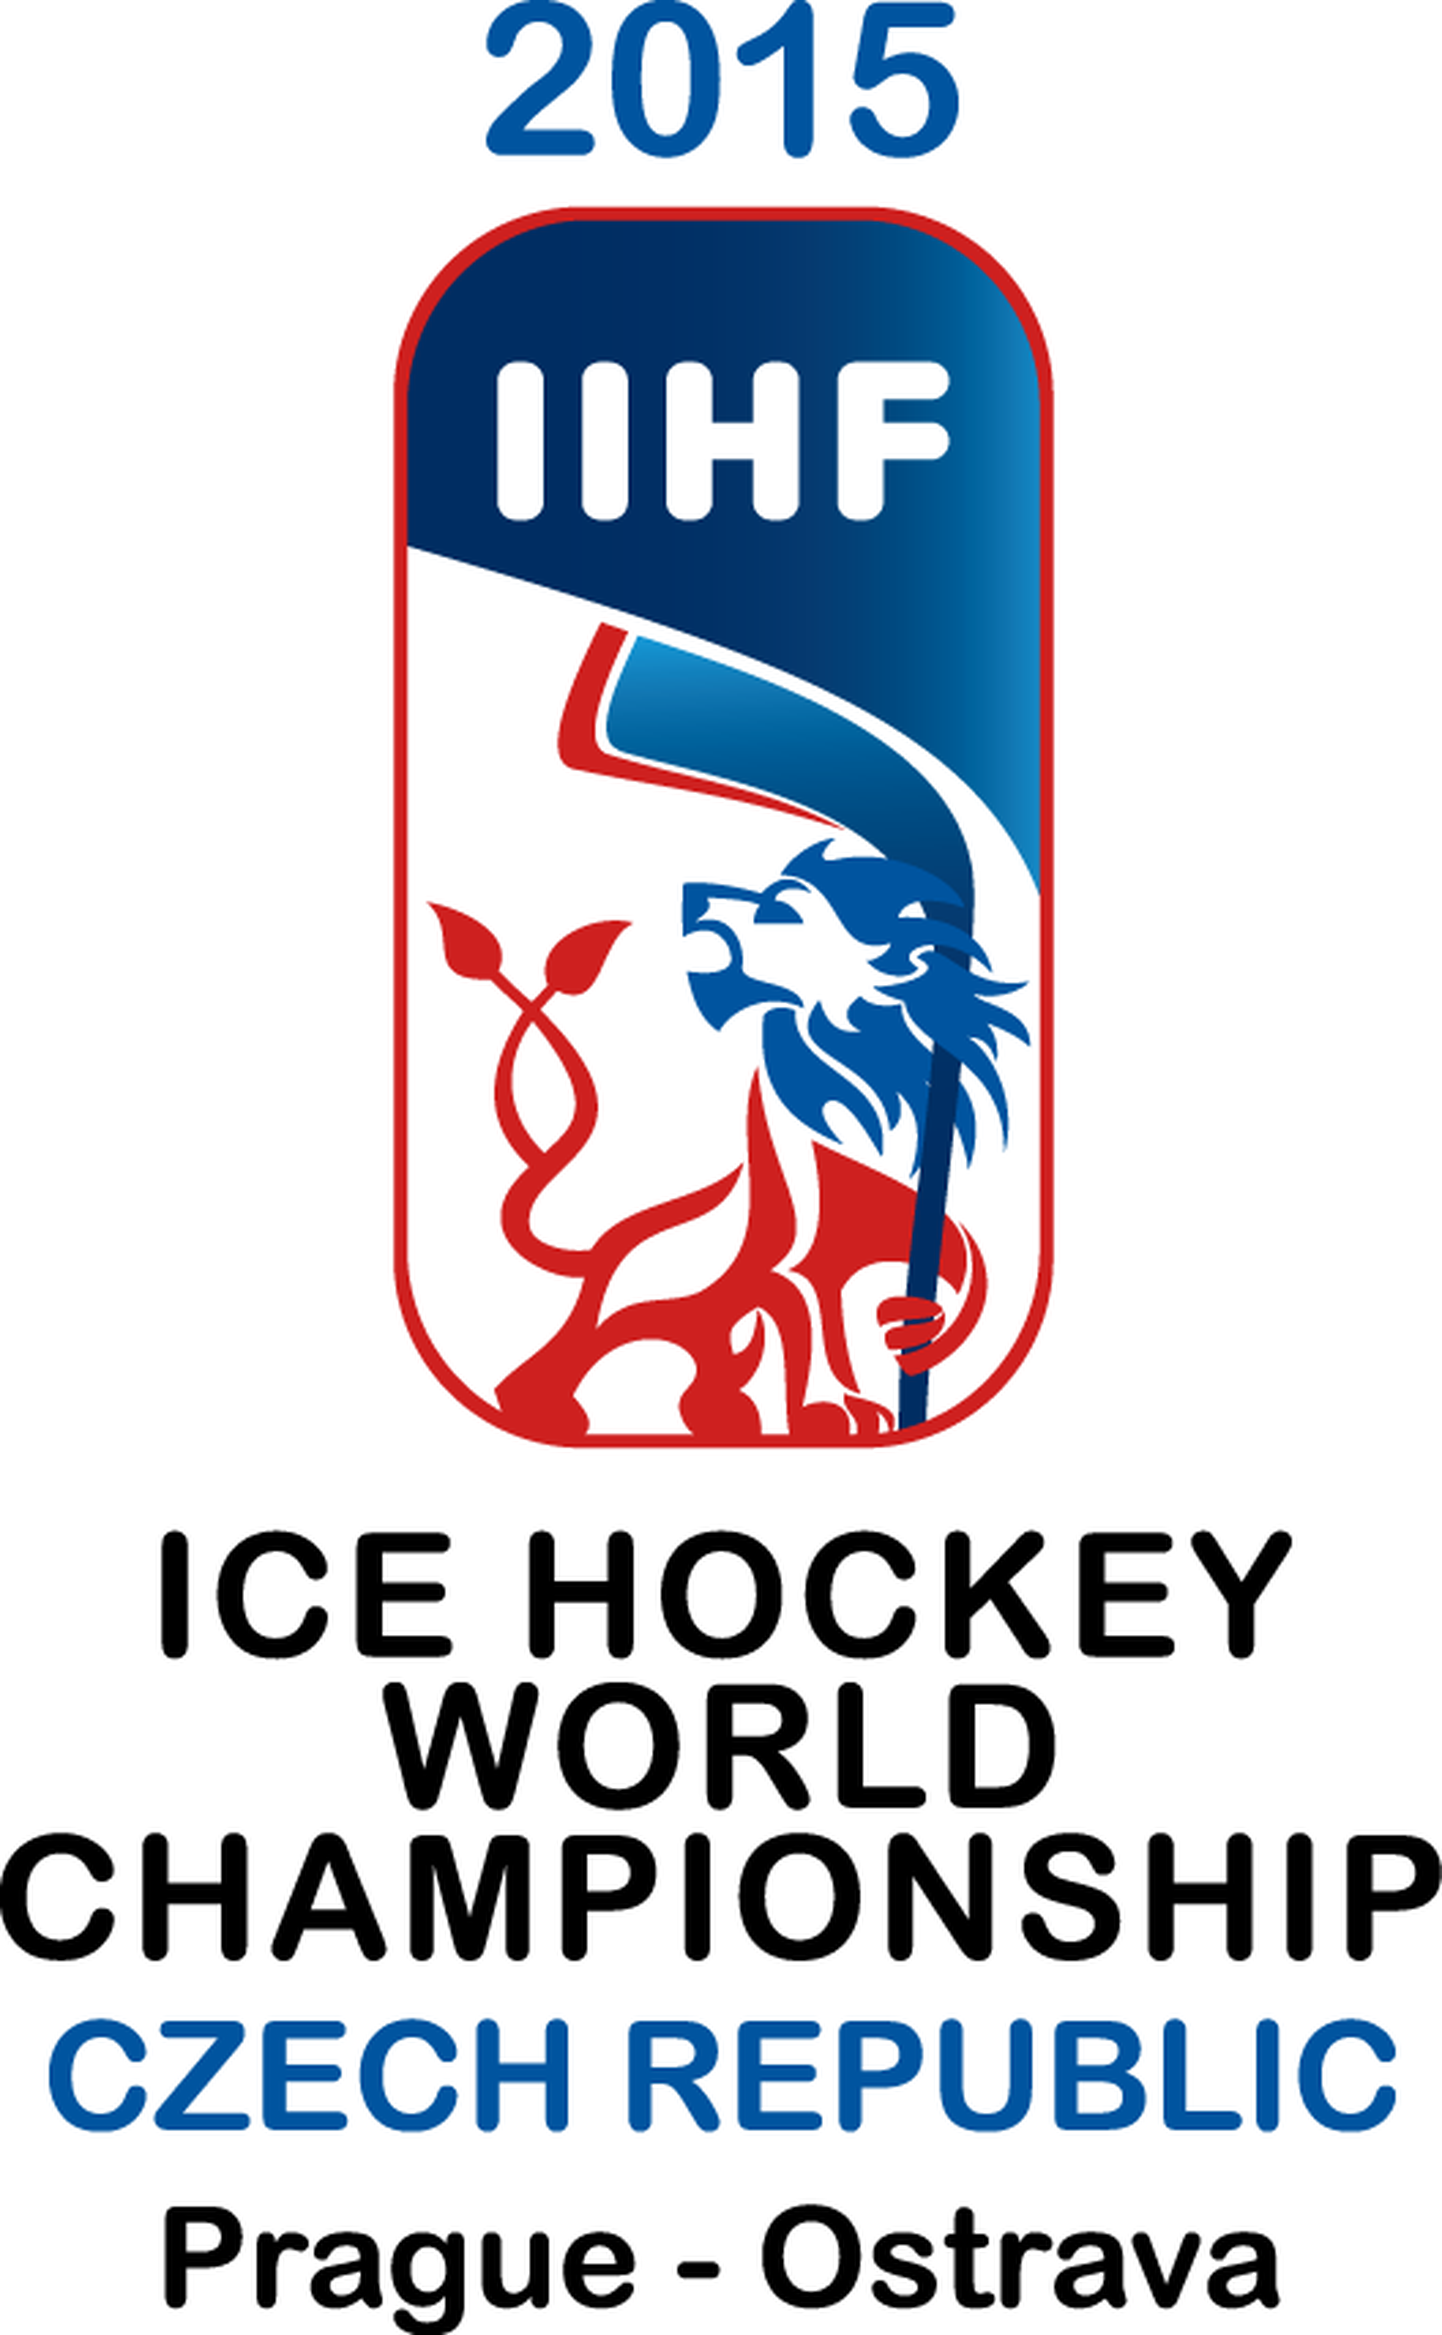 Эмблема чемпионата мира по хоккею 2015 года.